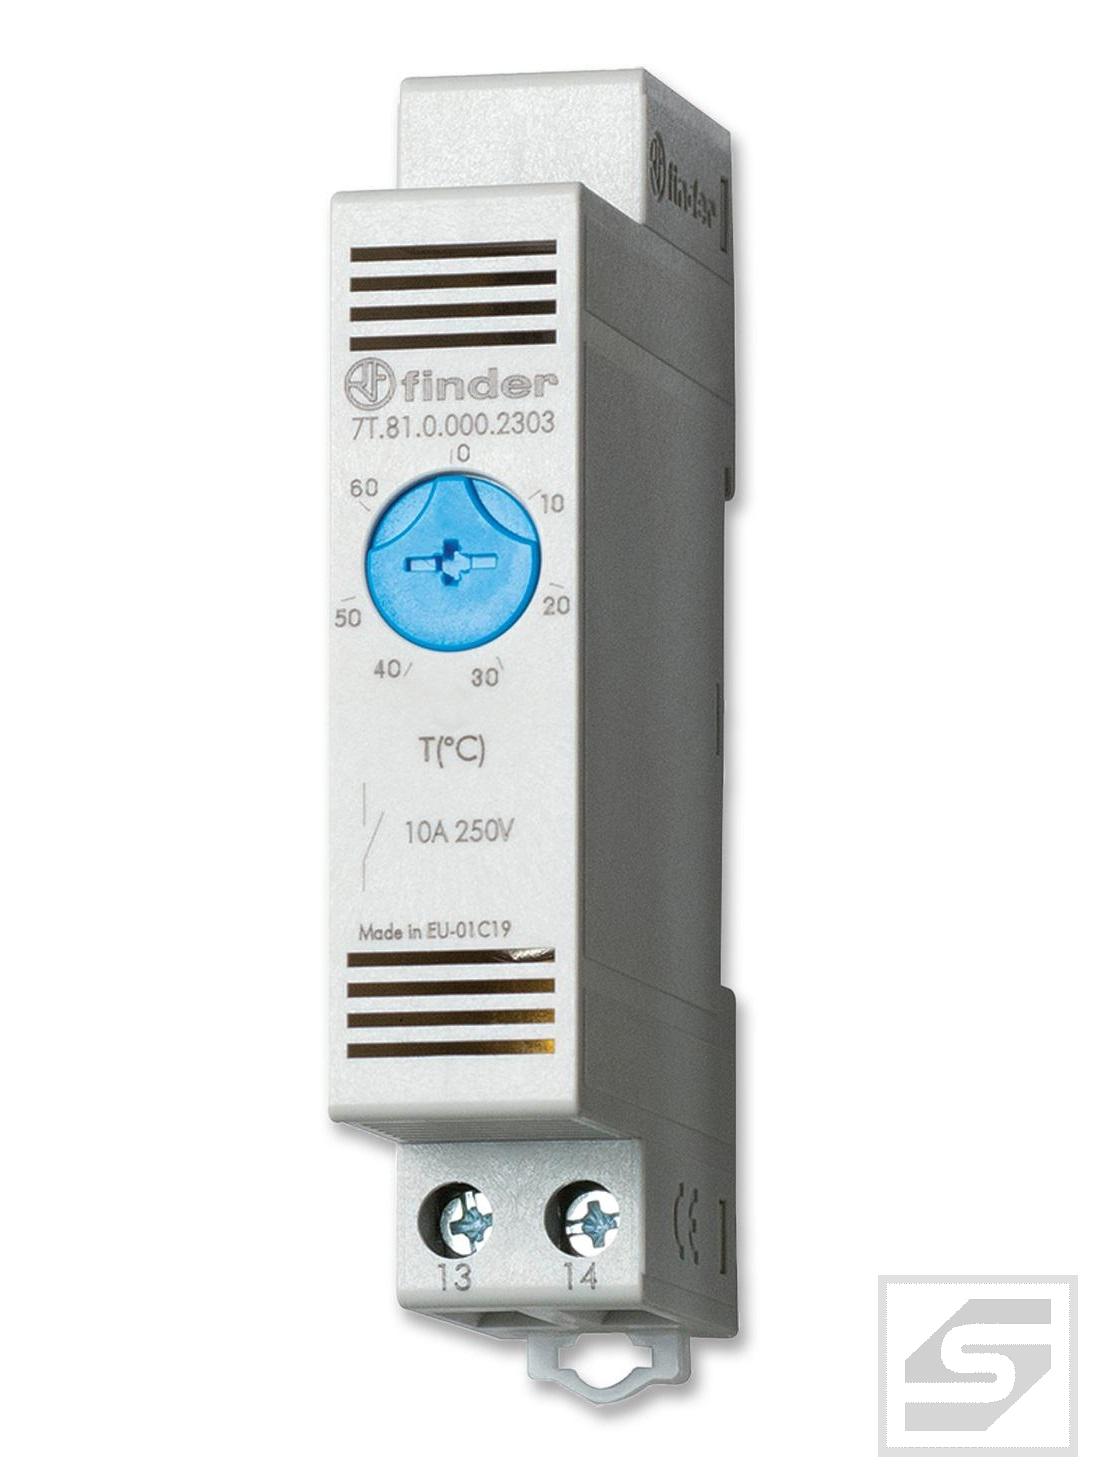 Termostat 7T.81.0.000.2303 FINDER NO;0..60st.C;10A;250V AC;do szafy;